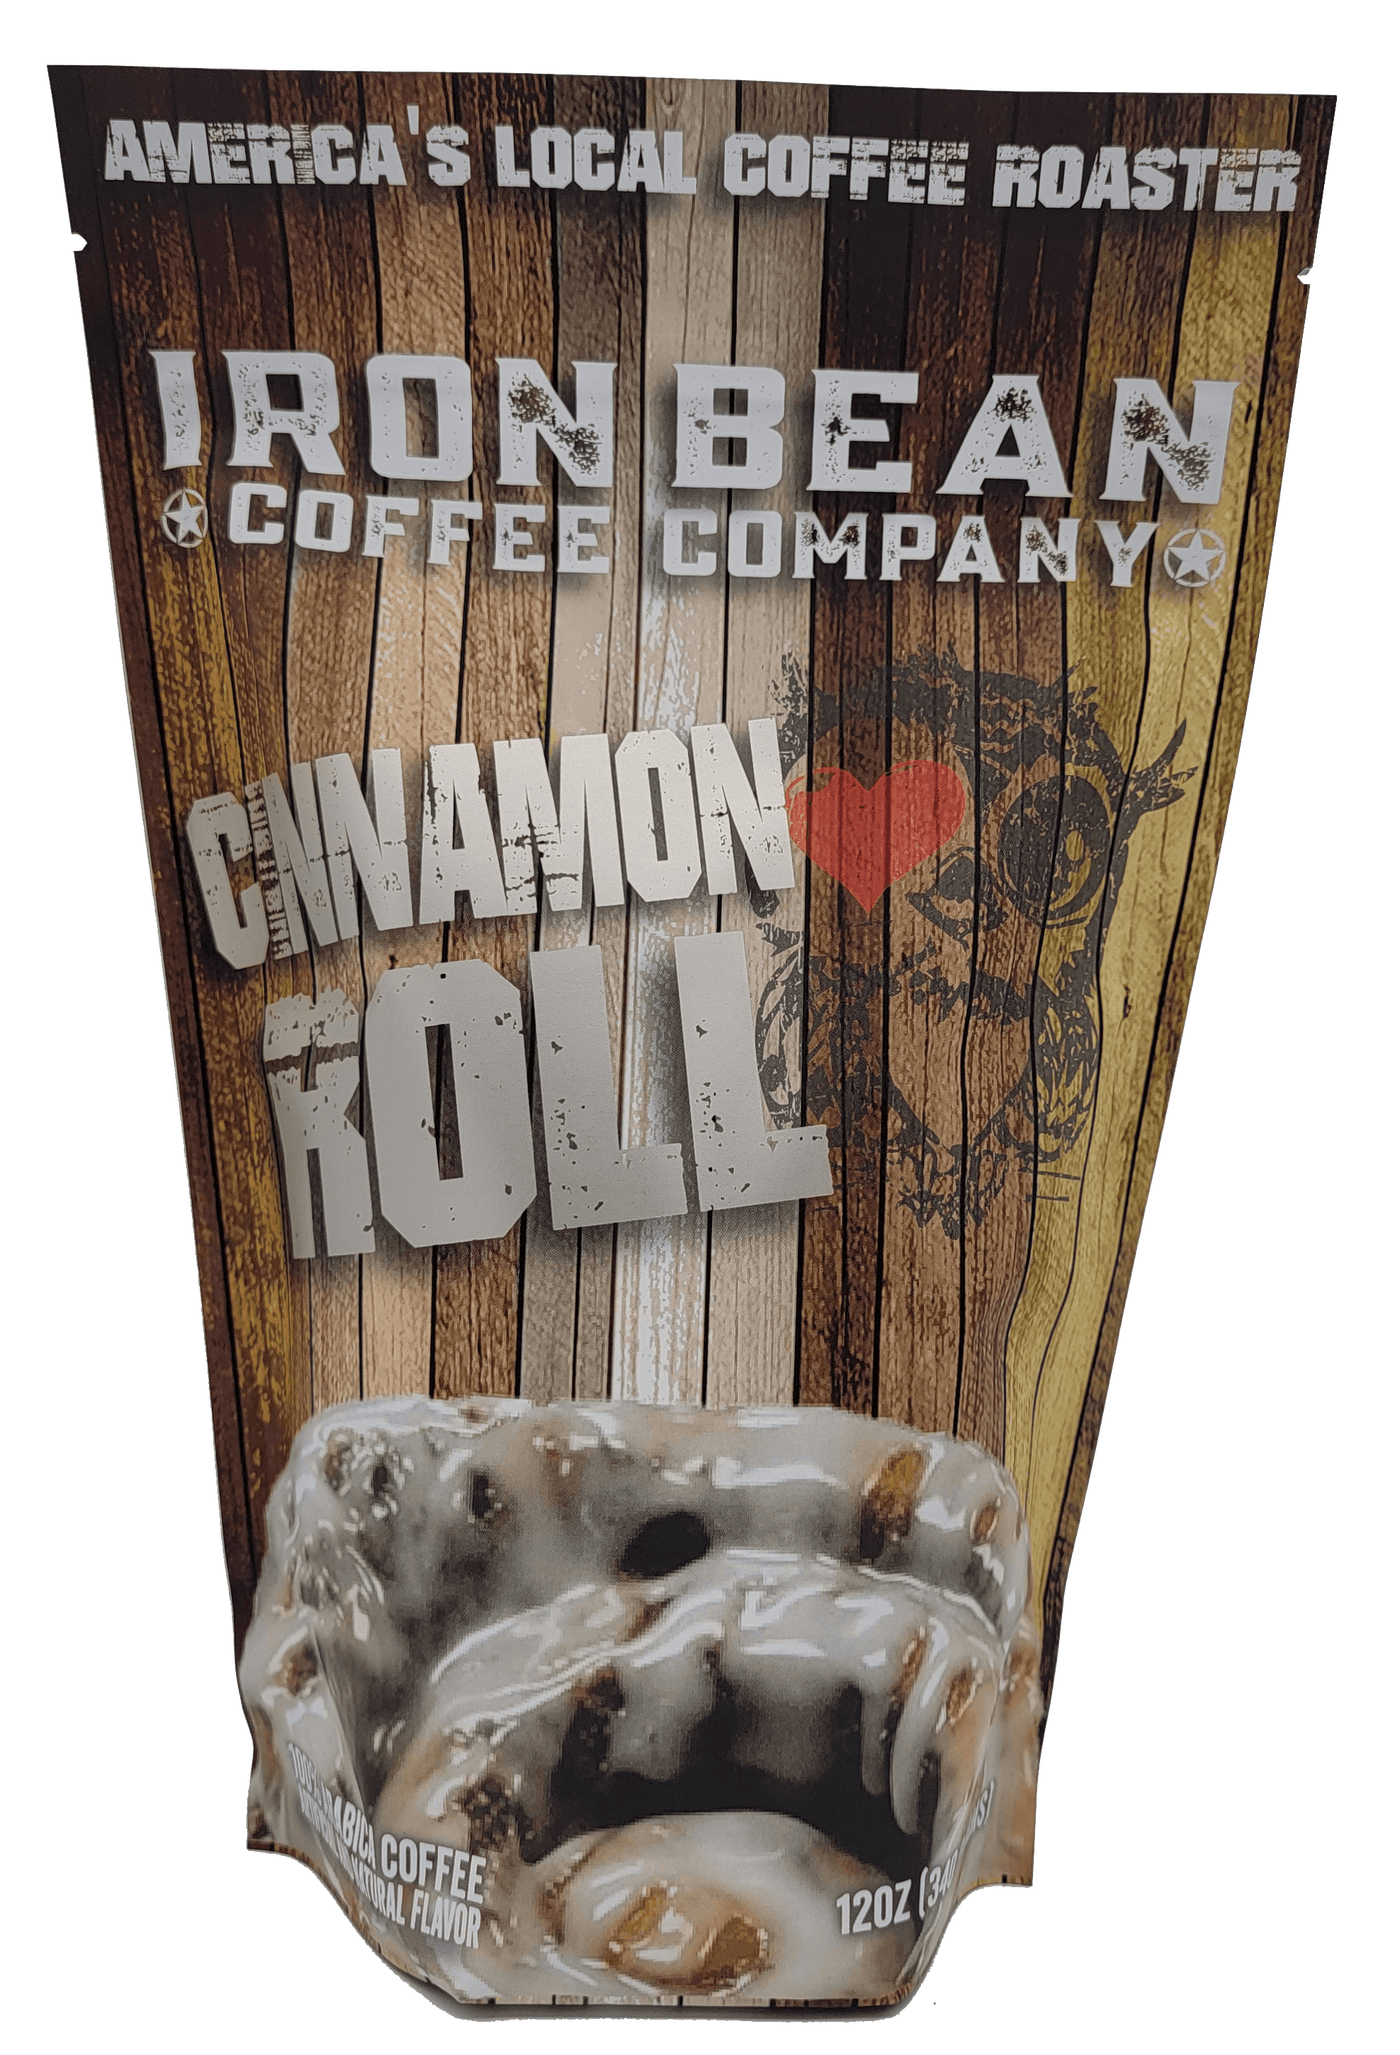 Cinnamon Roll Coffee - Iron Bean Coffee Company